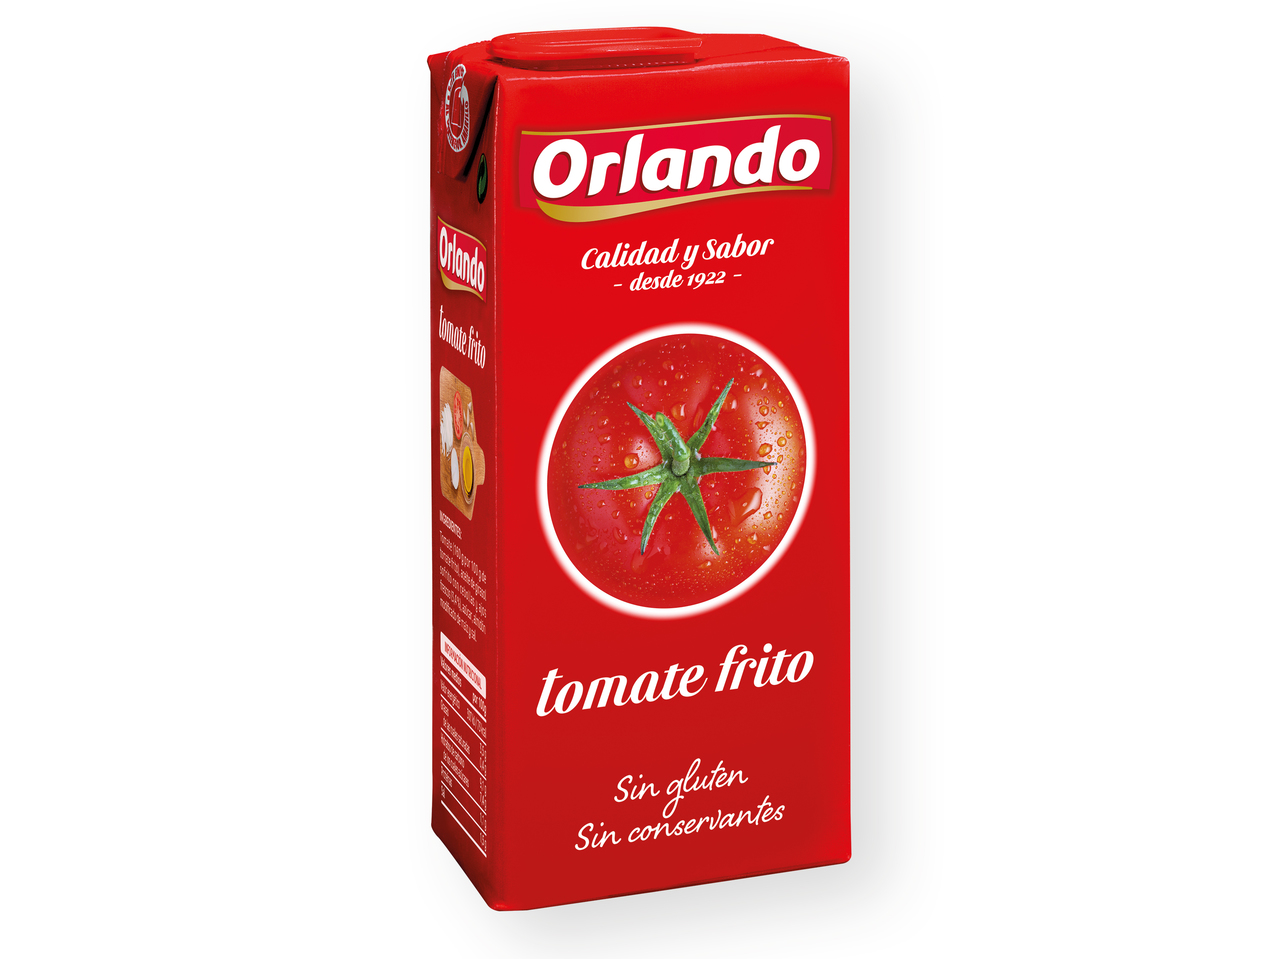 "Orlando" Tomate frito